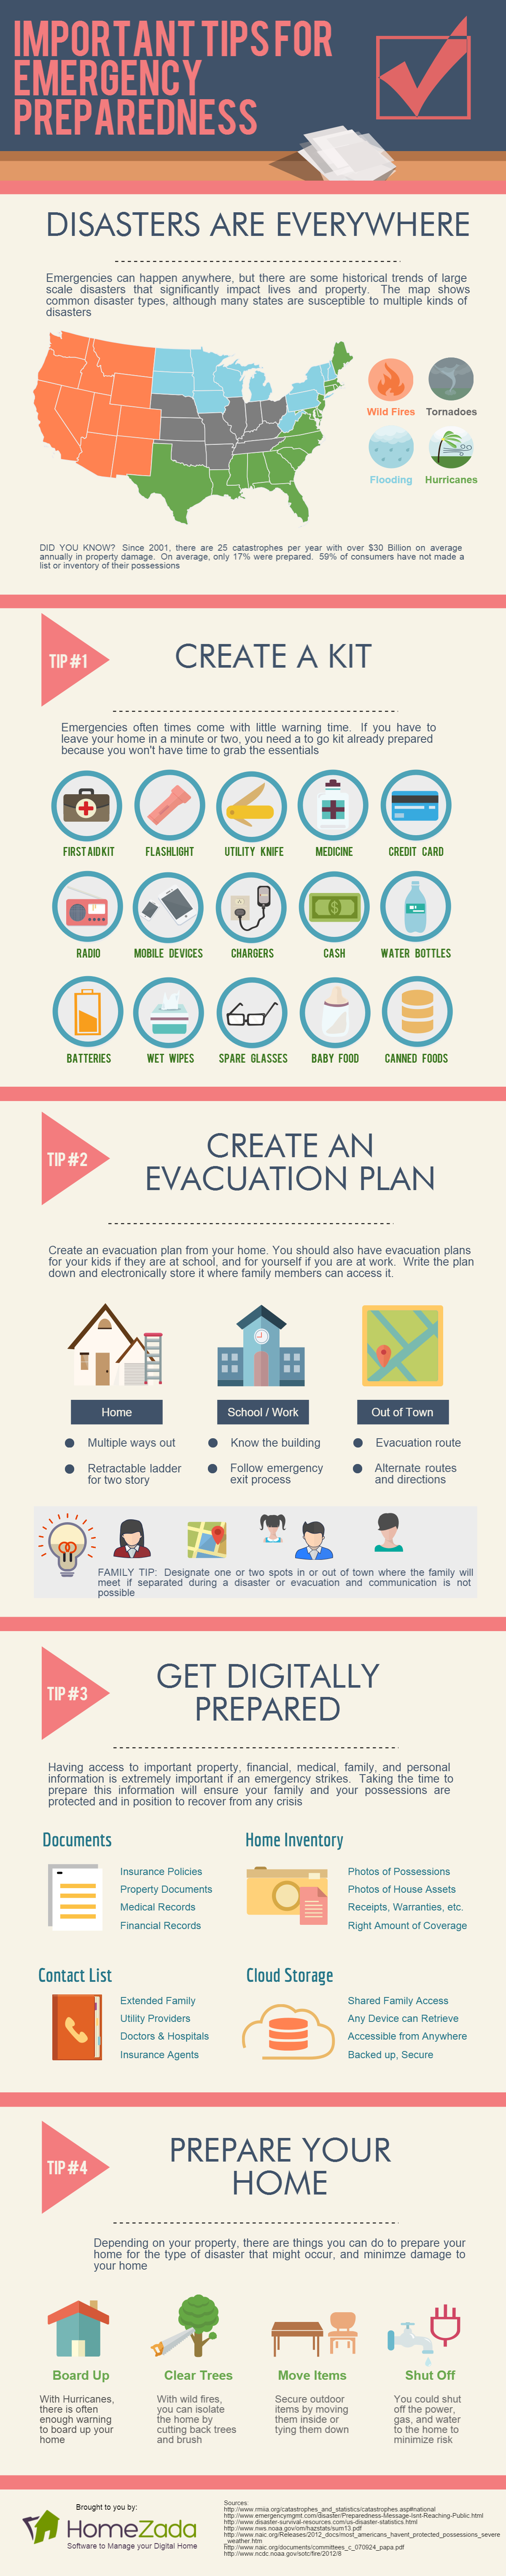 Emergency preparedness checklist infographic